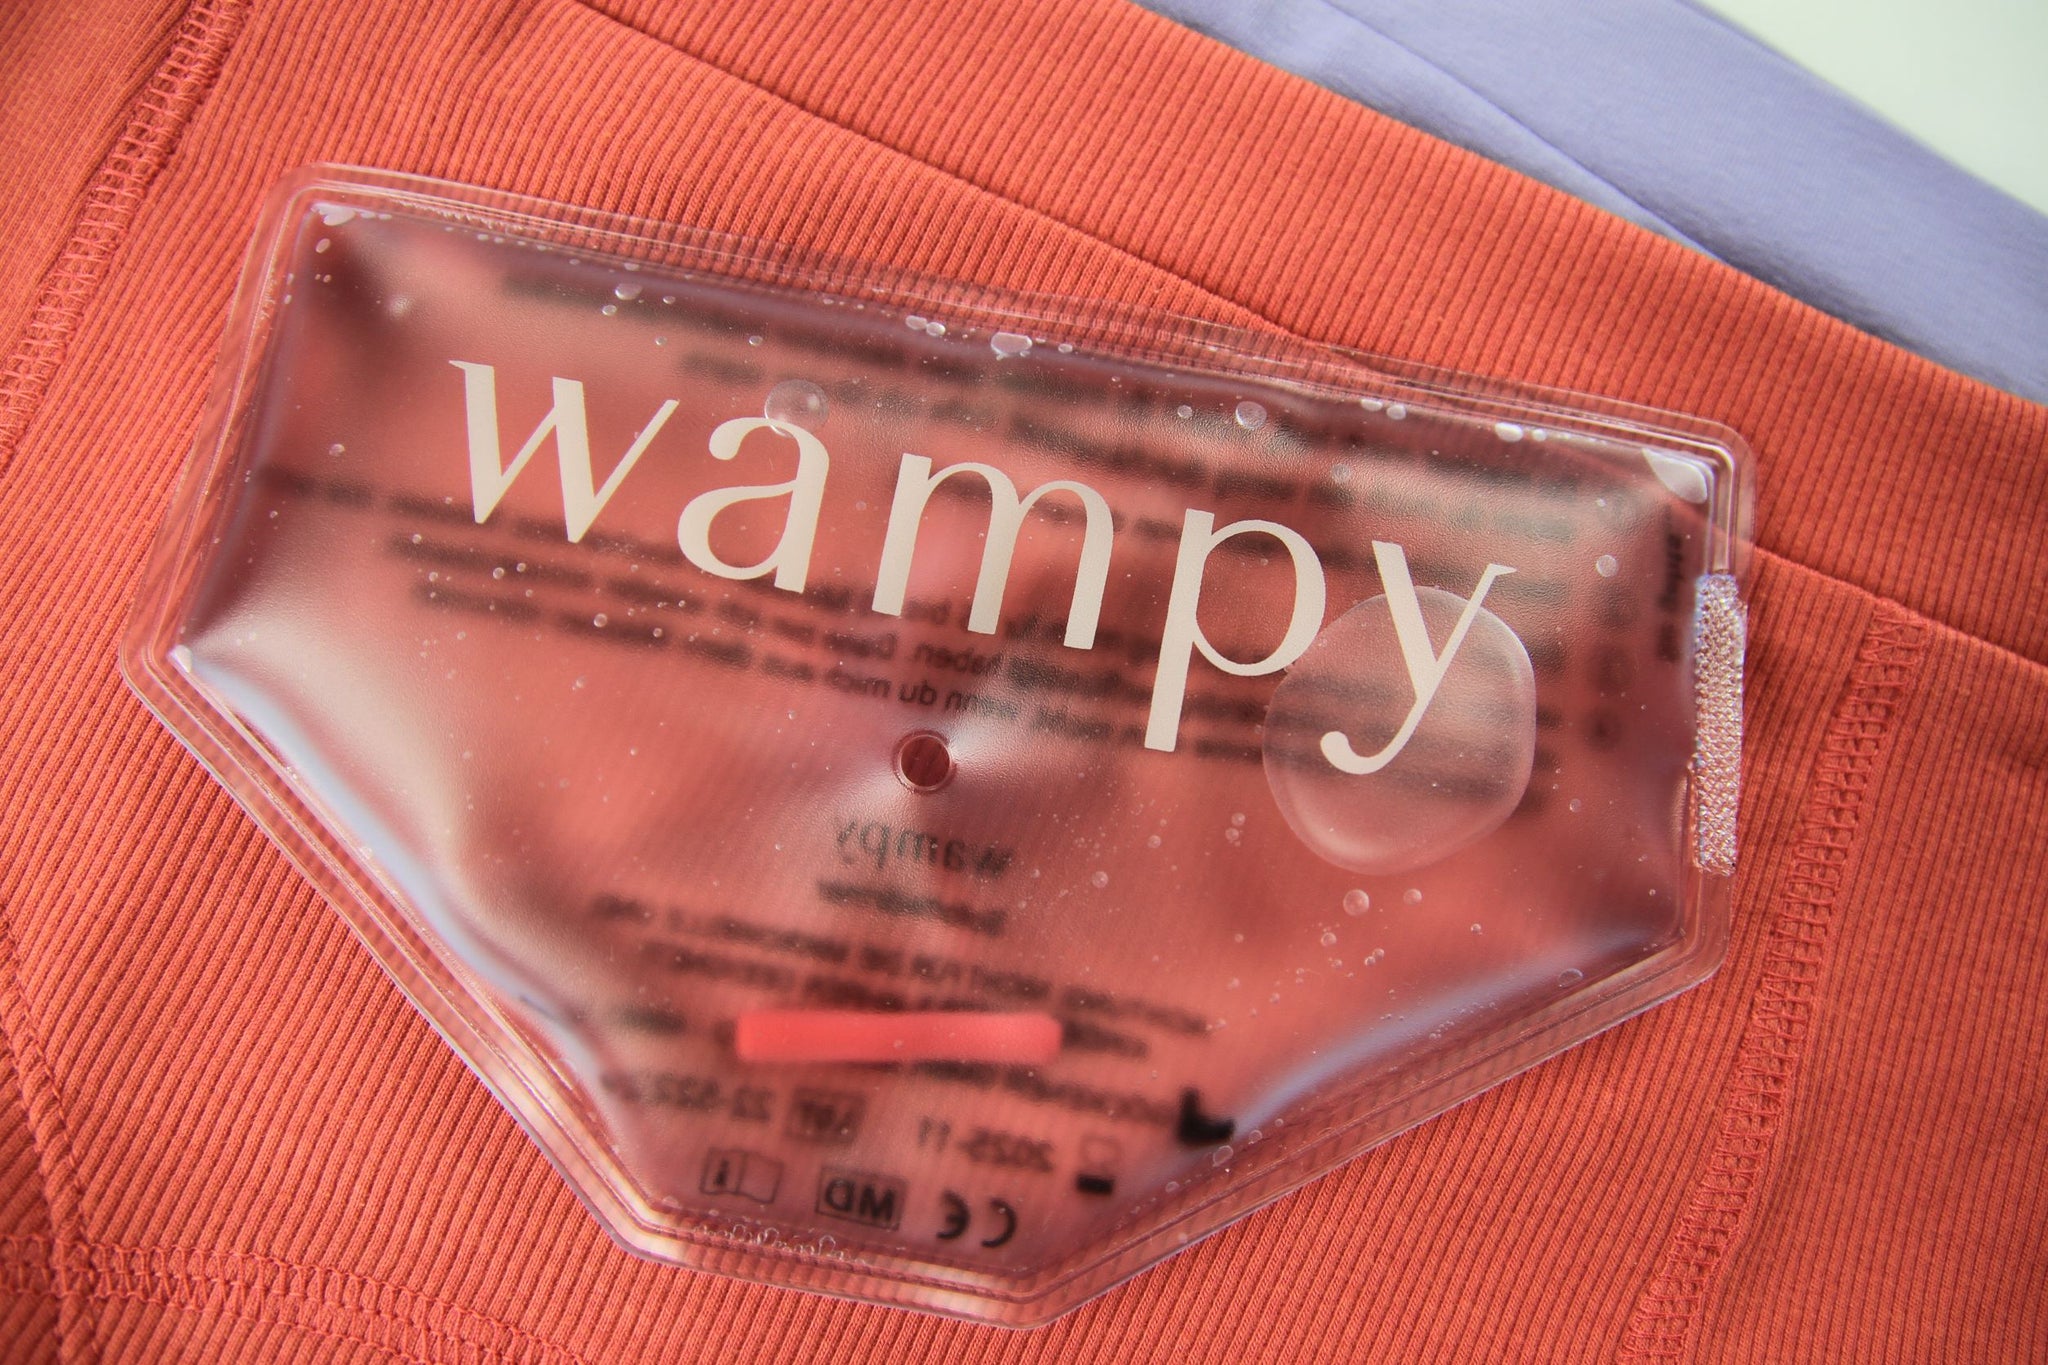 Wampy Wärmepad auf rosaroter und lavendel Unterhose. Die neue und nachhaltige Lösung gegen starke Periodenschmerzen. Beheizbare Unterwäsche von Wampys.